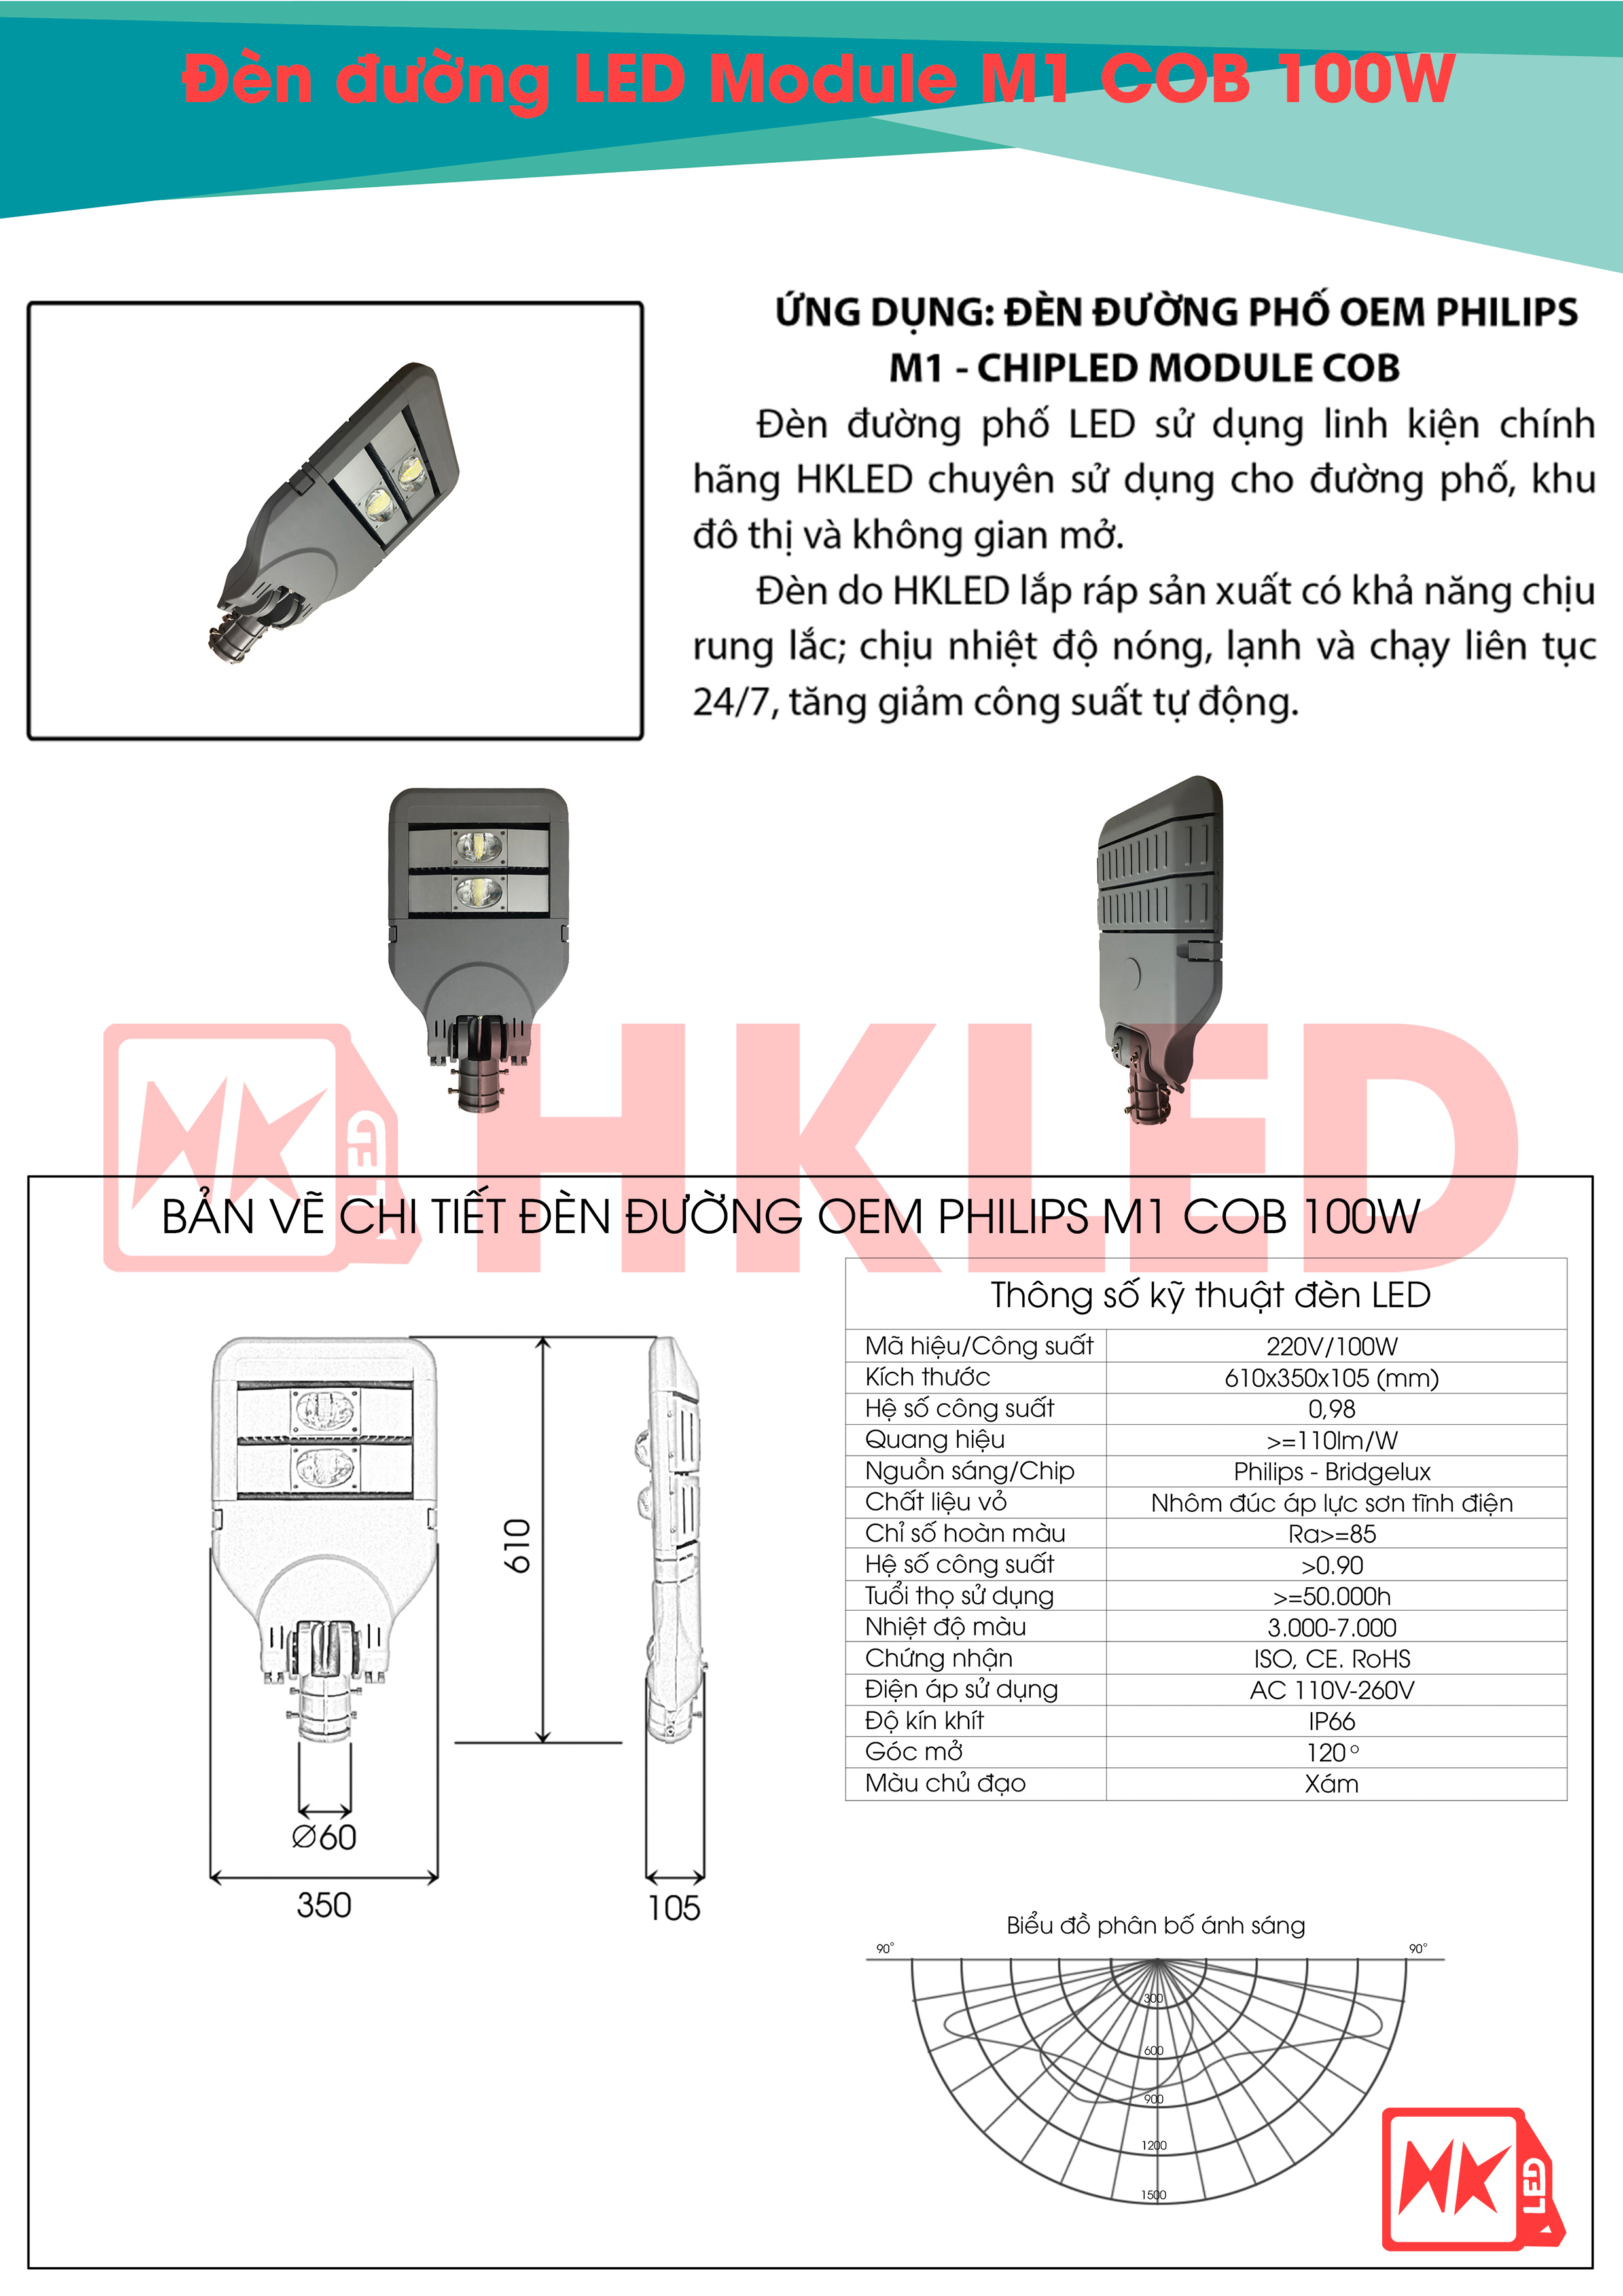 Ứng dụng, bản vẽ chi tiết và thông số kỹ thuật đèn đường LED OEM Philips M1 Module COB 100W